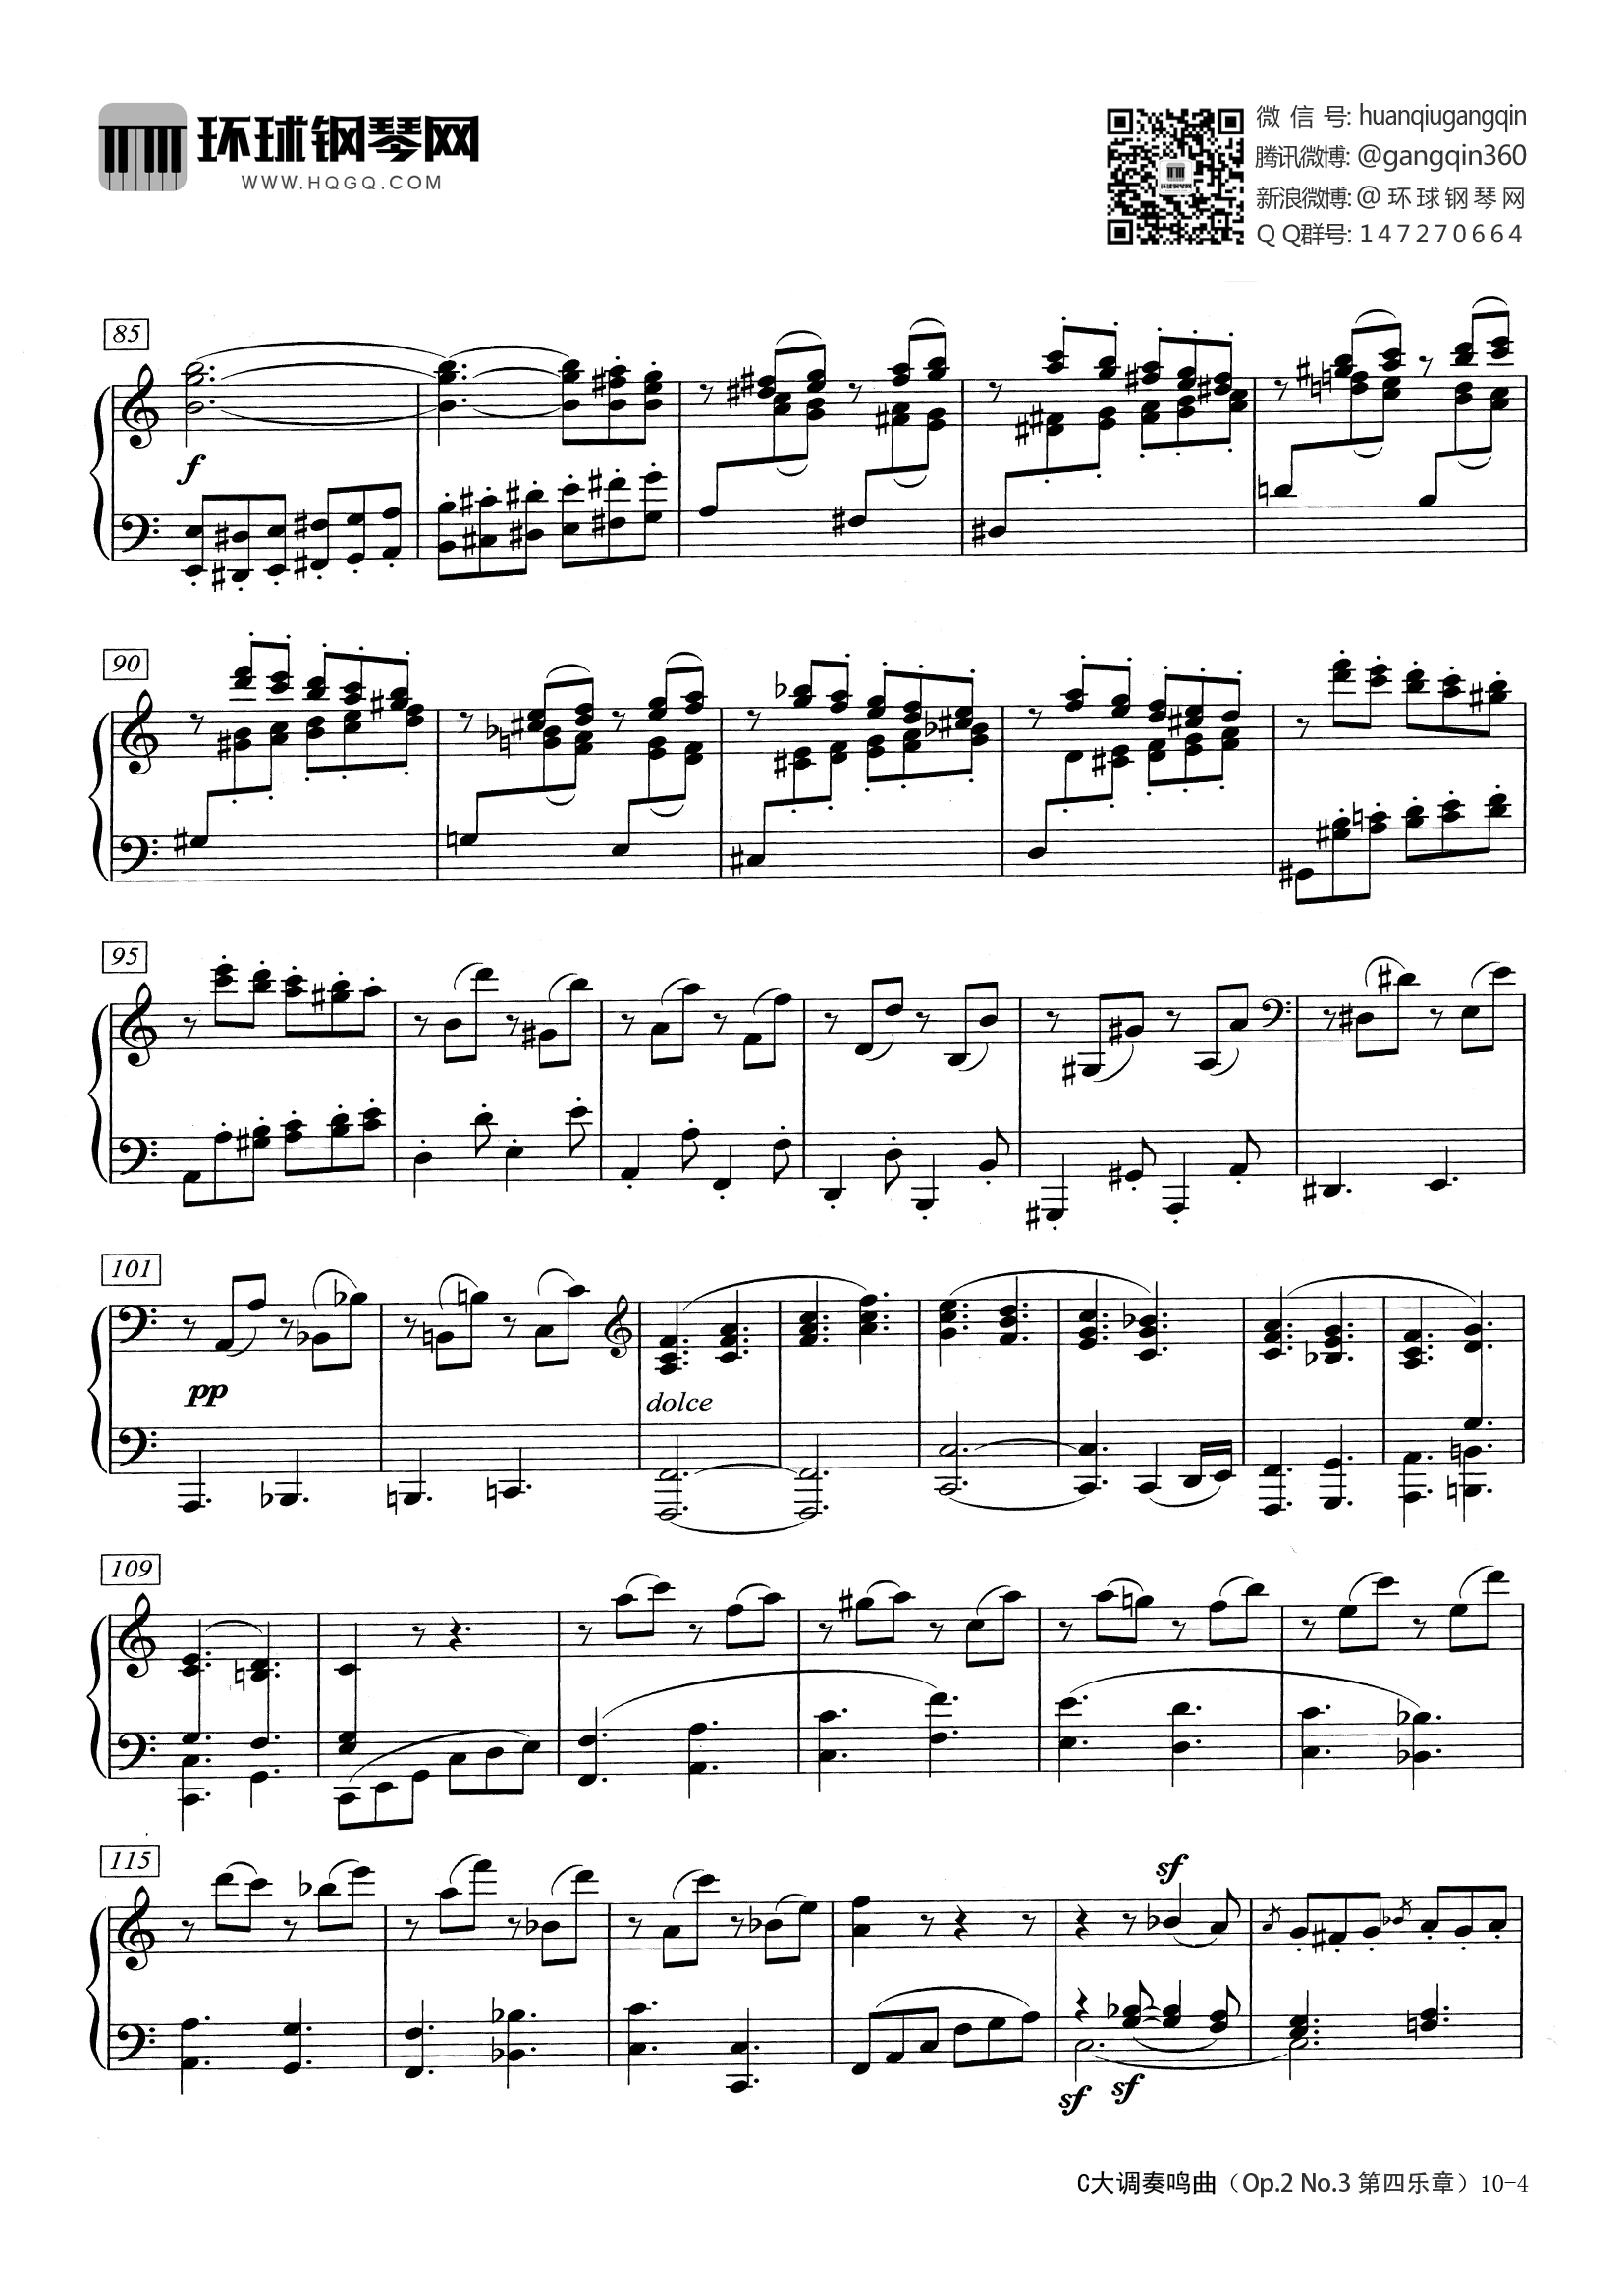 贝多芬钢琴奏鸣曲op2no1第四乐章(贝多芬钢琴奏鸣曲op2no1第四乐章钢琴谱)